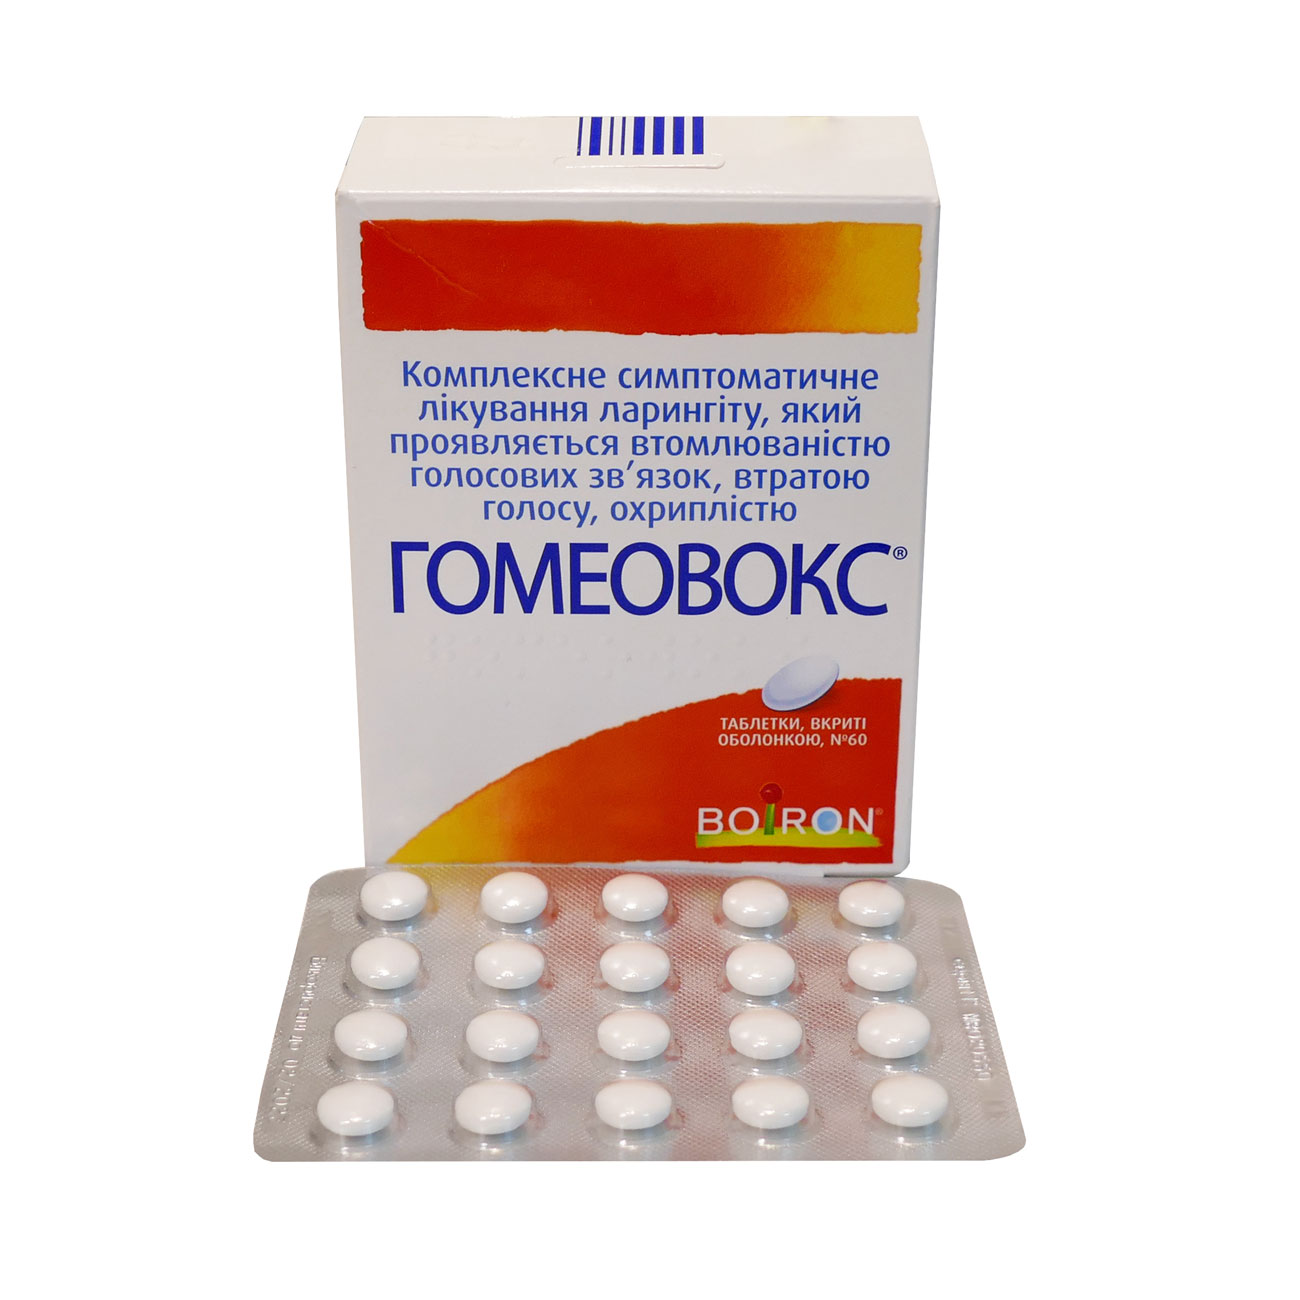 Гомеовокс - таблетки от чего? Инструкция, цена и аналоги препарата